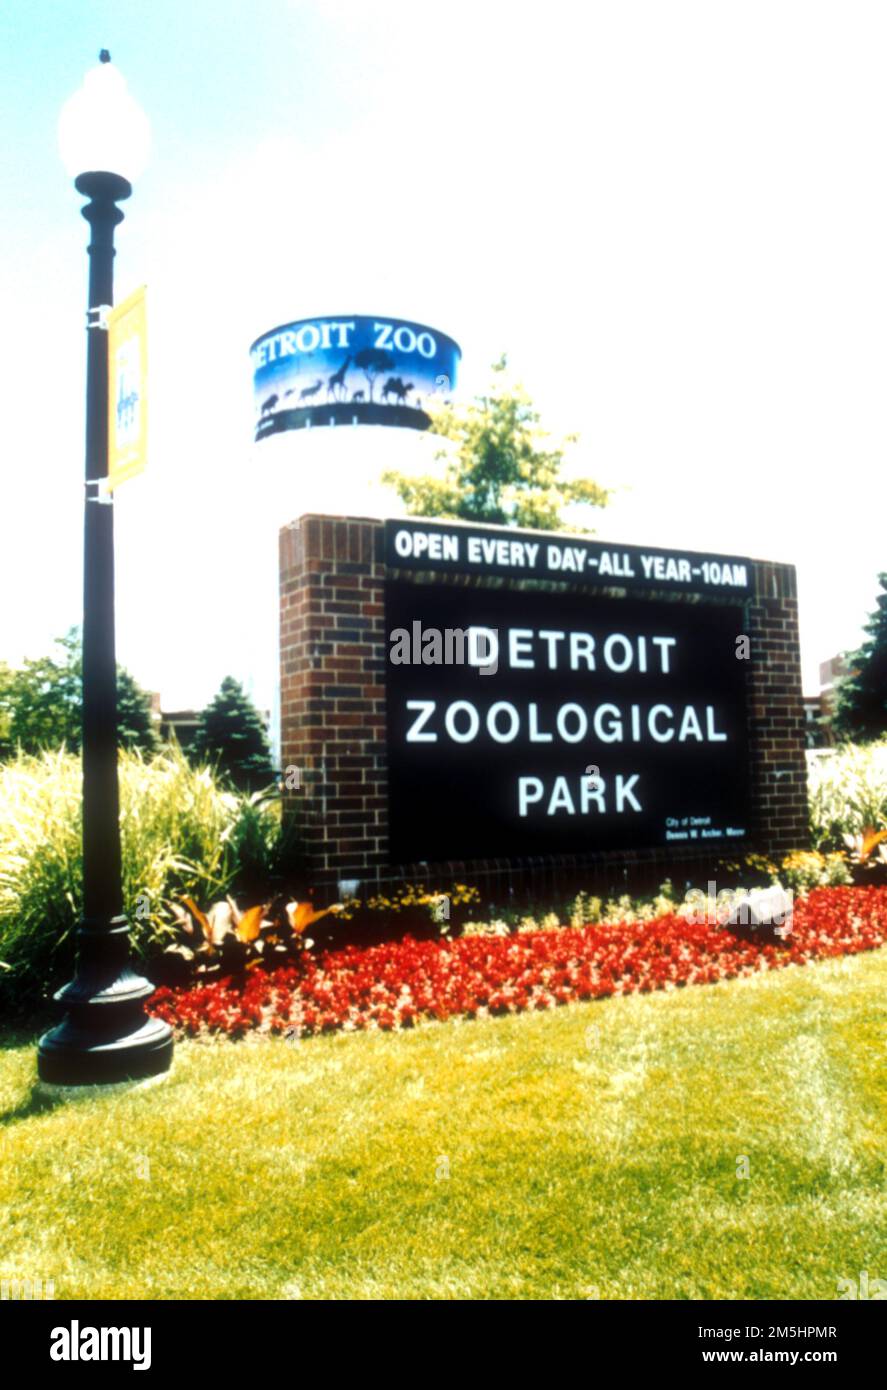 Woodward Avenue (M-1) - Automotive Heritage Trail - Eingang Detroit Zoo. Rote Blumen säumen das Schild, das Besucher im Zoo von Detroit willkommen heißt. Standort: Michigan (42,475° N 83,156° W) Stockfoto